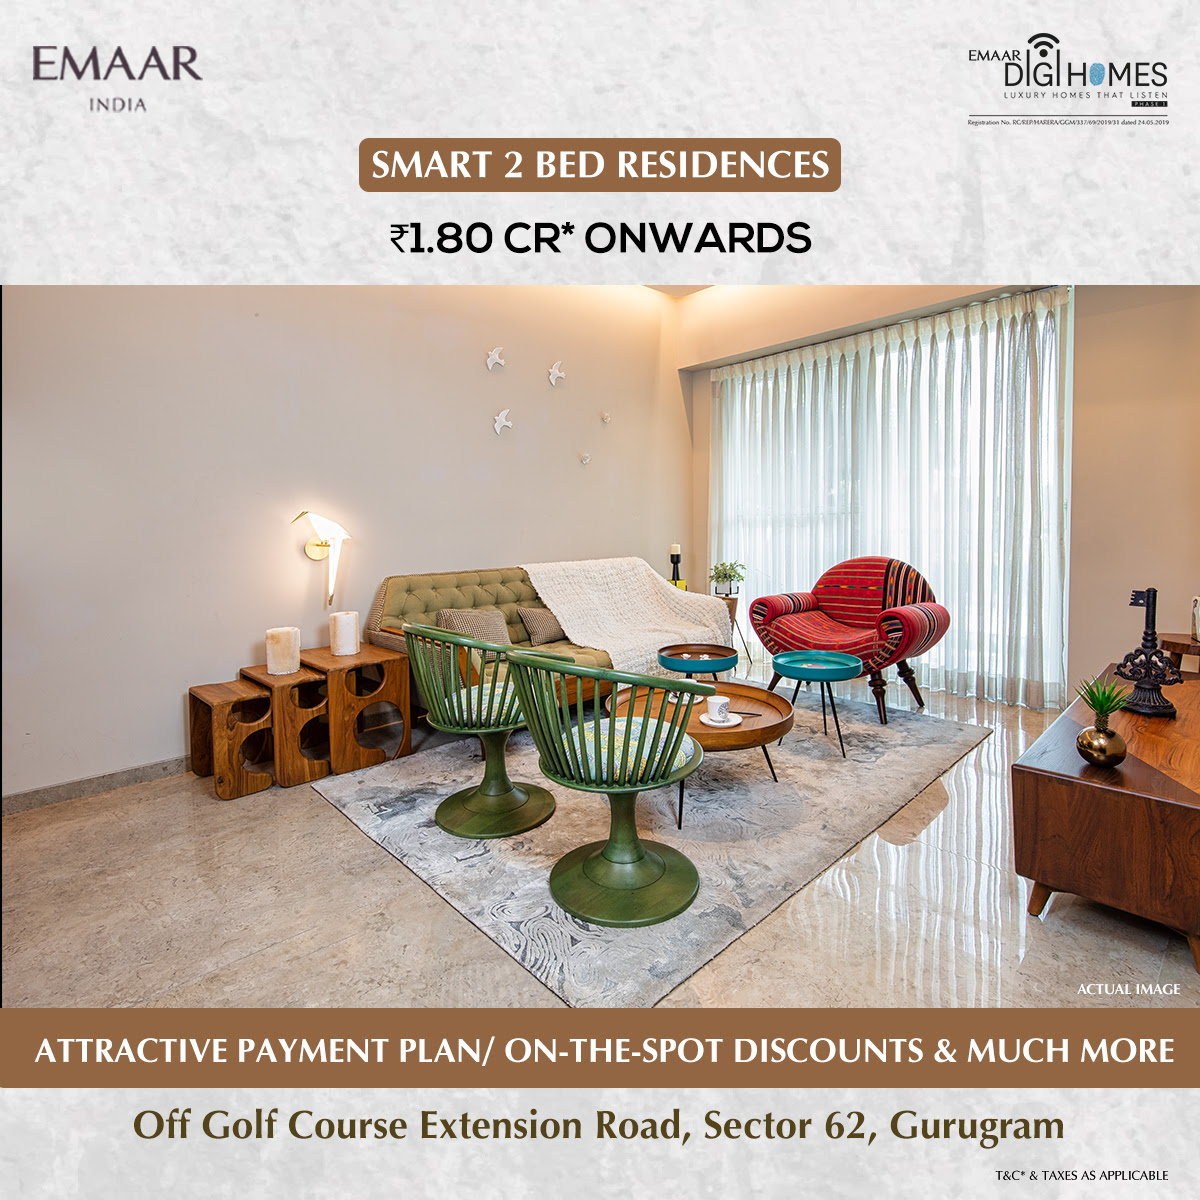 Emaar Digi Homes Presenting 2 Bed residence Rs 1.80 Cr onwards, Gurgaon Update